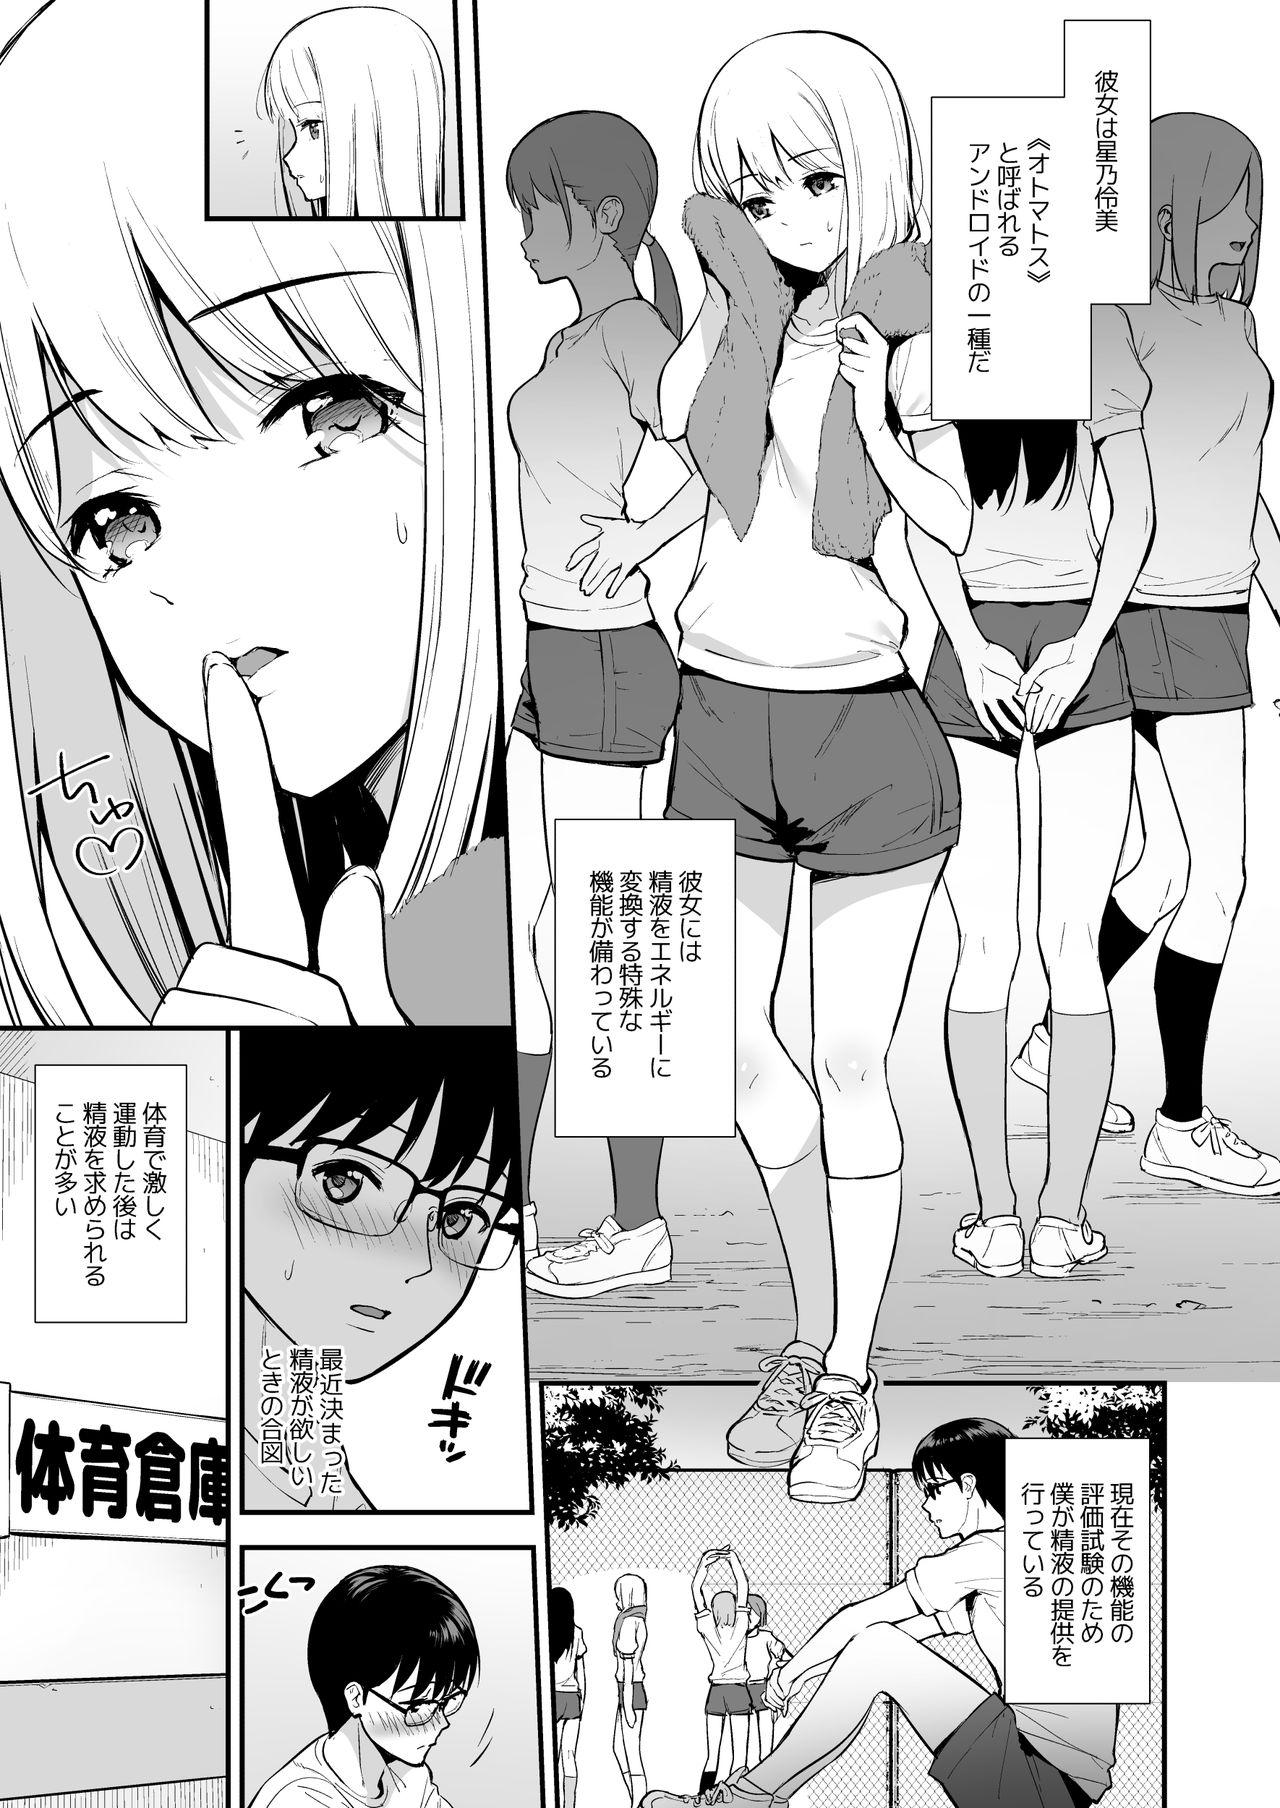 Sensual Kanojo wa Boku no Taieki de Ugoite iru Phase. 02 - Original Party - Page 2